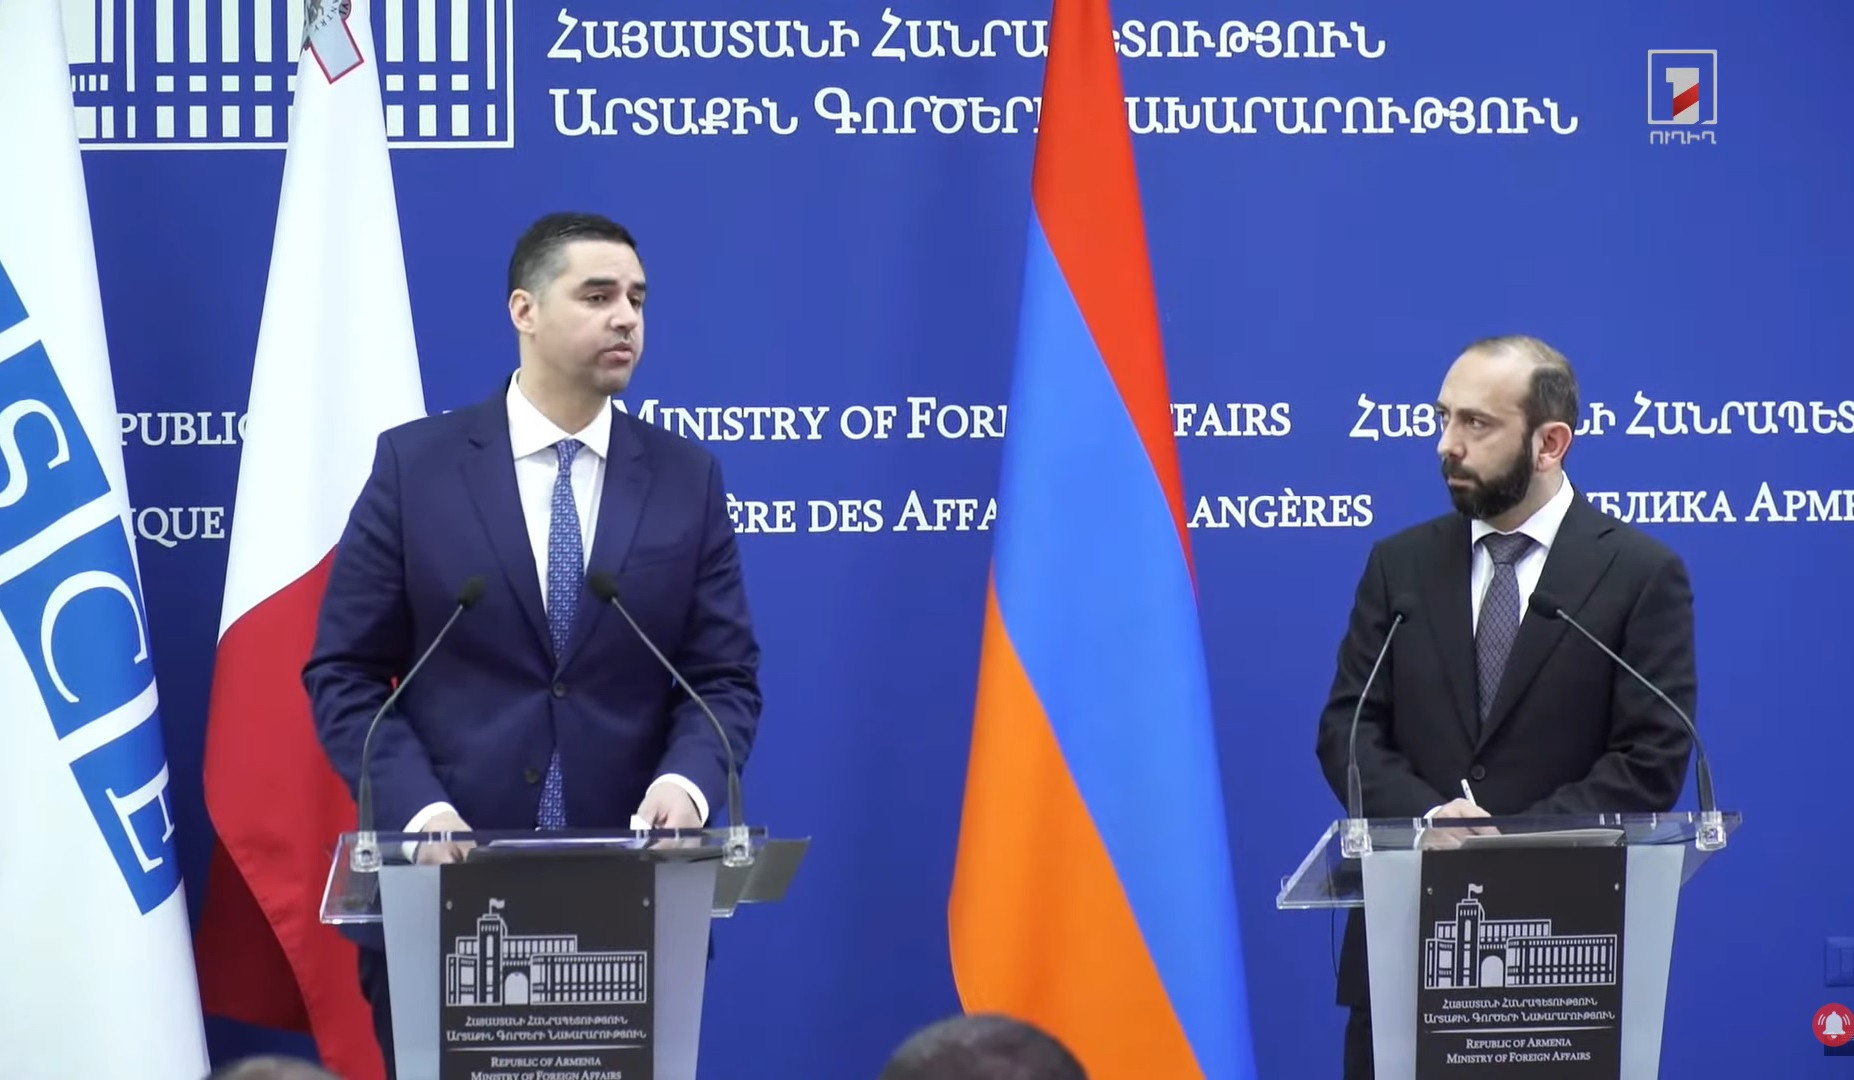 Հայաստանի և Ադրբեջանի միջև կայուն ու համապարփակ խաղաղության ձեռքբերումը մնում է ԵԱՀԿ-ի առաջնահերթությունը. ԵԱՀԿ նախագահ